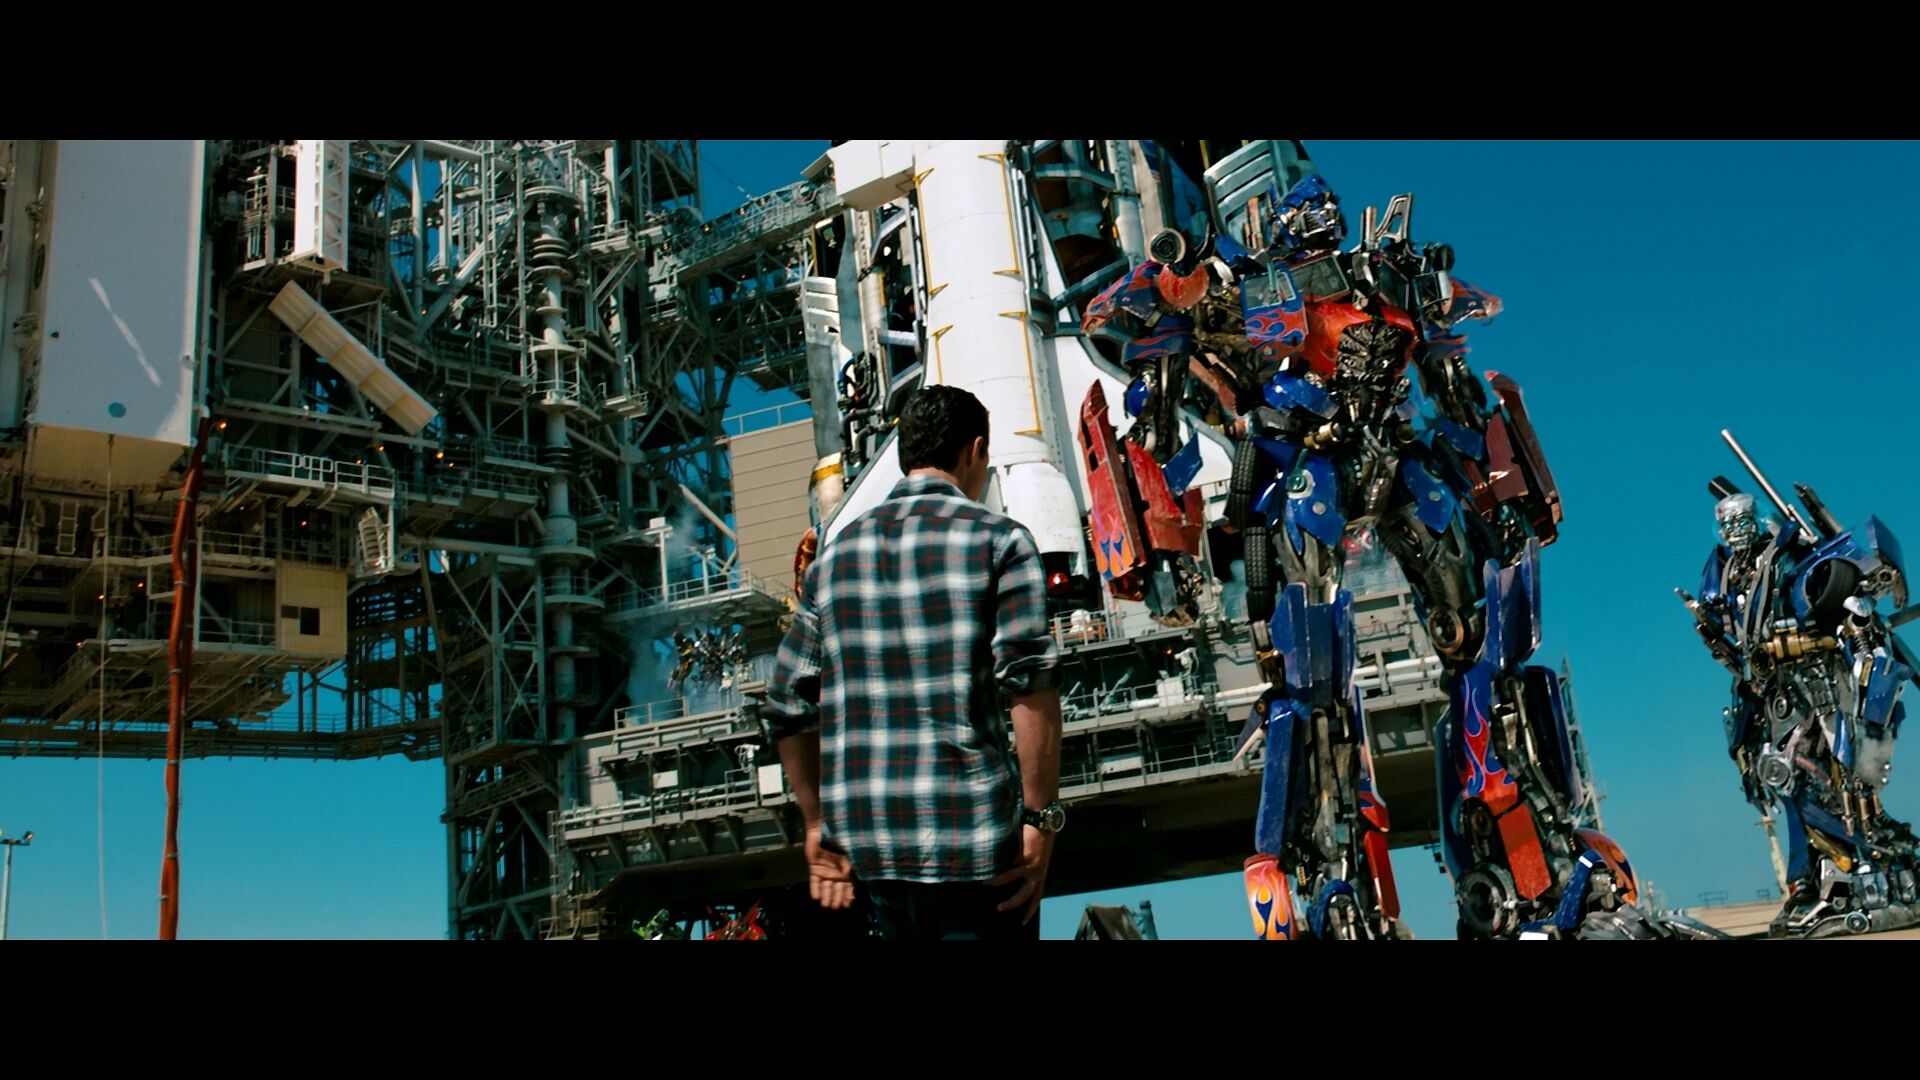 Optimus Prime, Transformers Movie Wiki